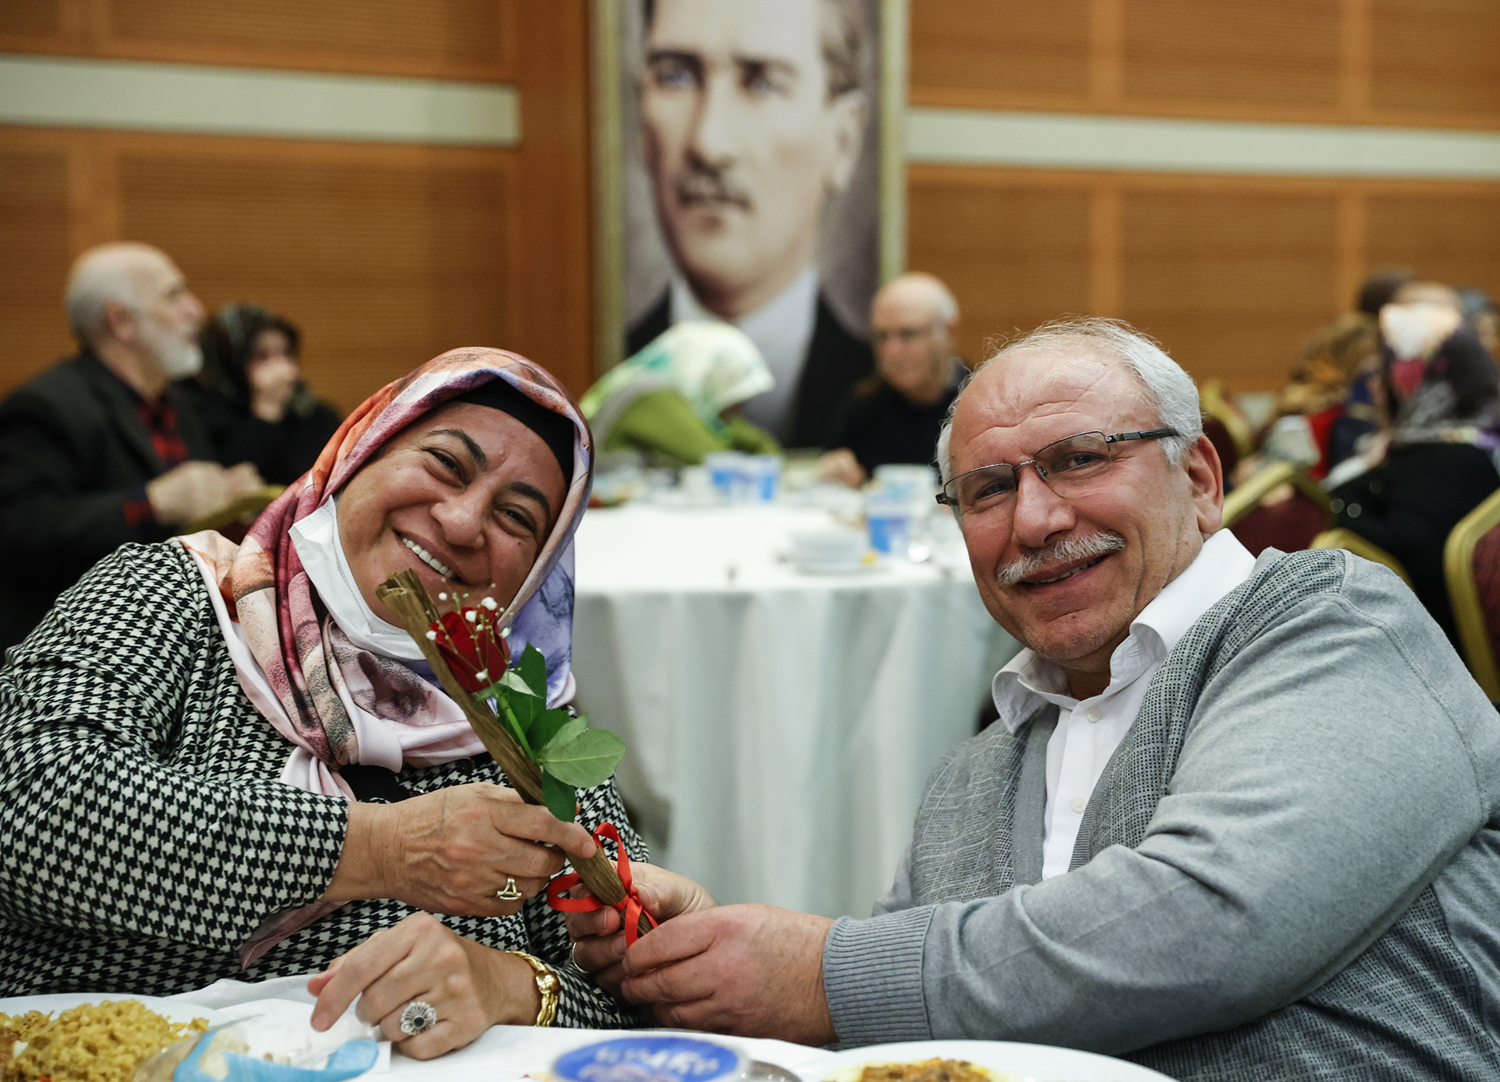 Evlilik hayatnda 40 yl aan iftler '41 Kere Maallah' programnda bir araya geldi